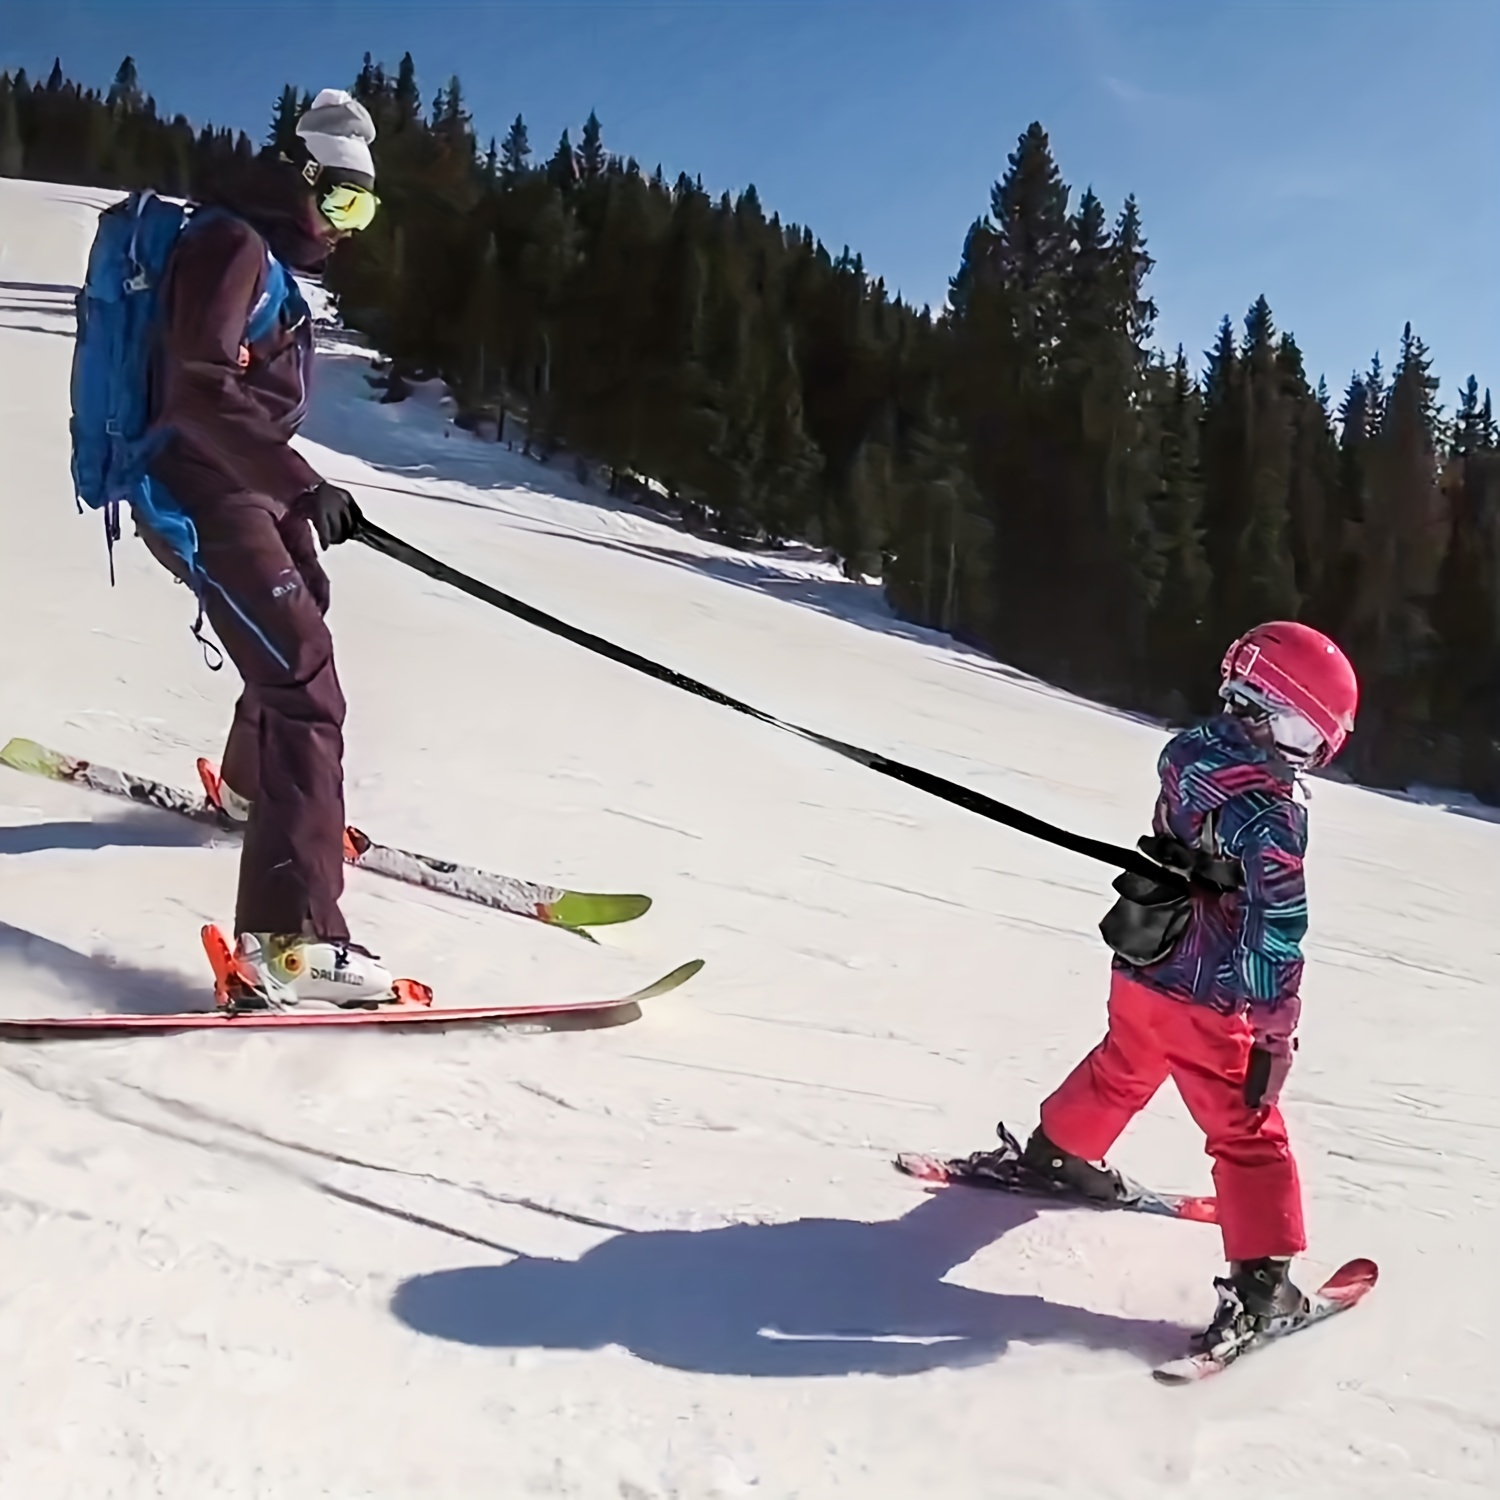 Harnais d'entraînement de ski et de snowboard pour enfants avec